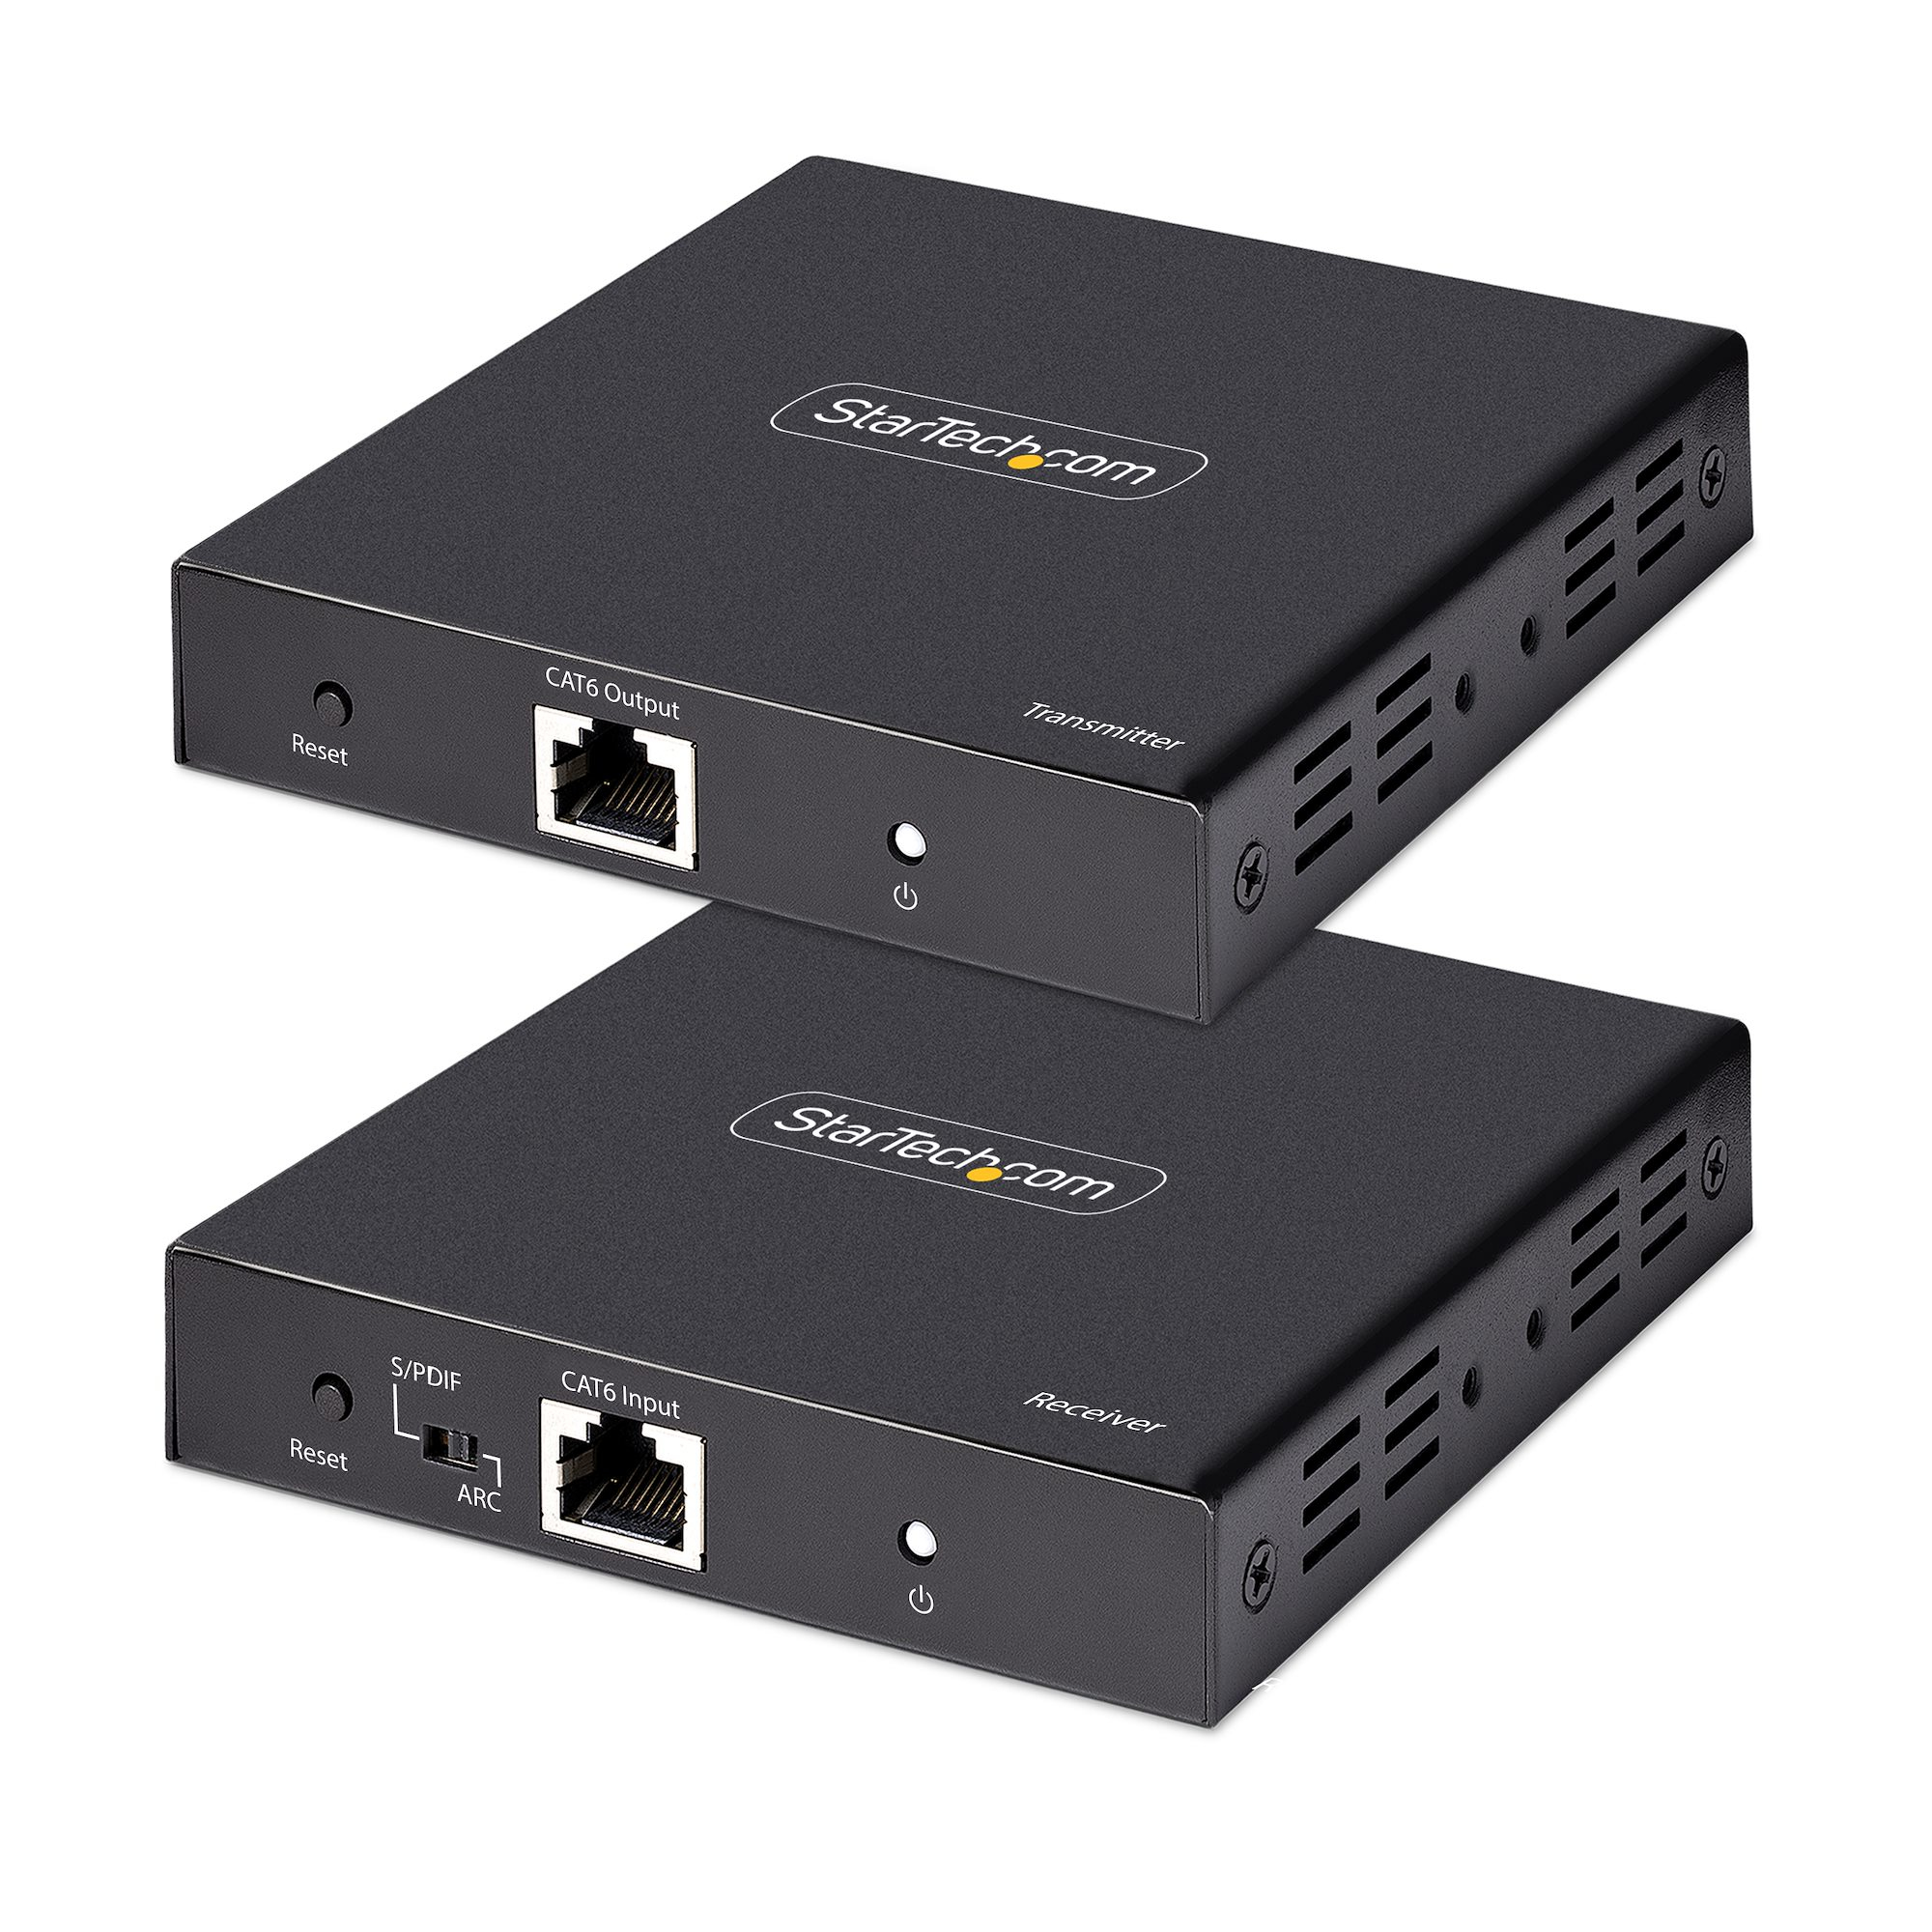 StarTech.com Extendeur HDMI 4K sur Câble CAT5/CAT6 - Prolongateur Vidéo 4K 60Hz HDR jusqu'à 70m - Extender HDMI 4K, Câblage HDMI sur Ethernet - Sortie Audio S/PDIF - Kit Émetteur-Récepteur HDMI